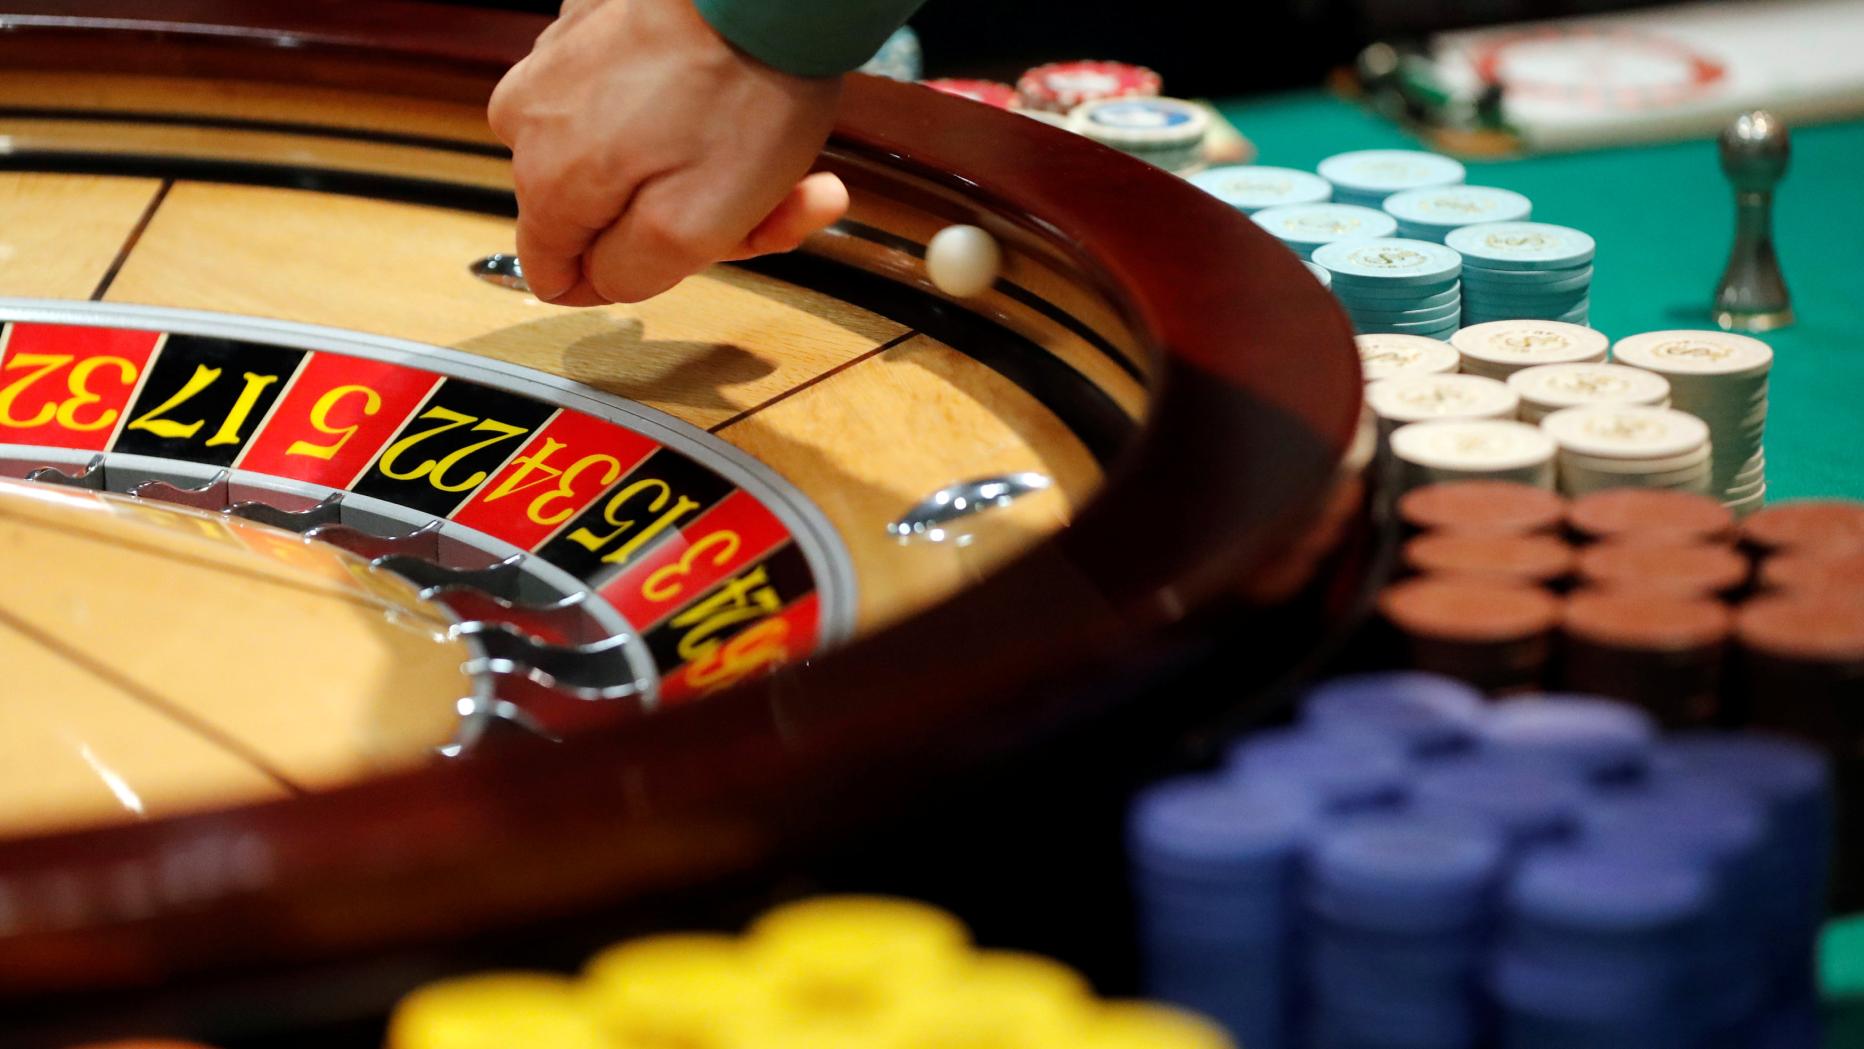 online casino österreich: Eine unglaublich einfache Methode, die für alle funktioniert